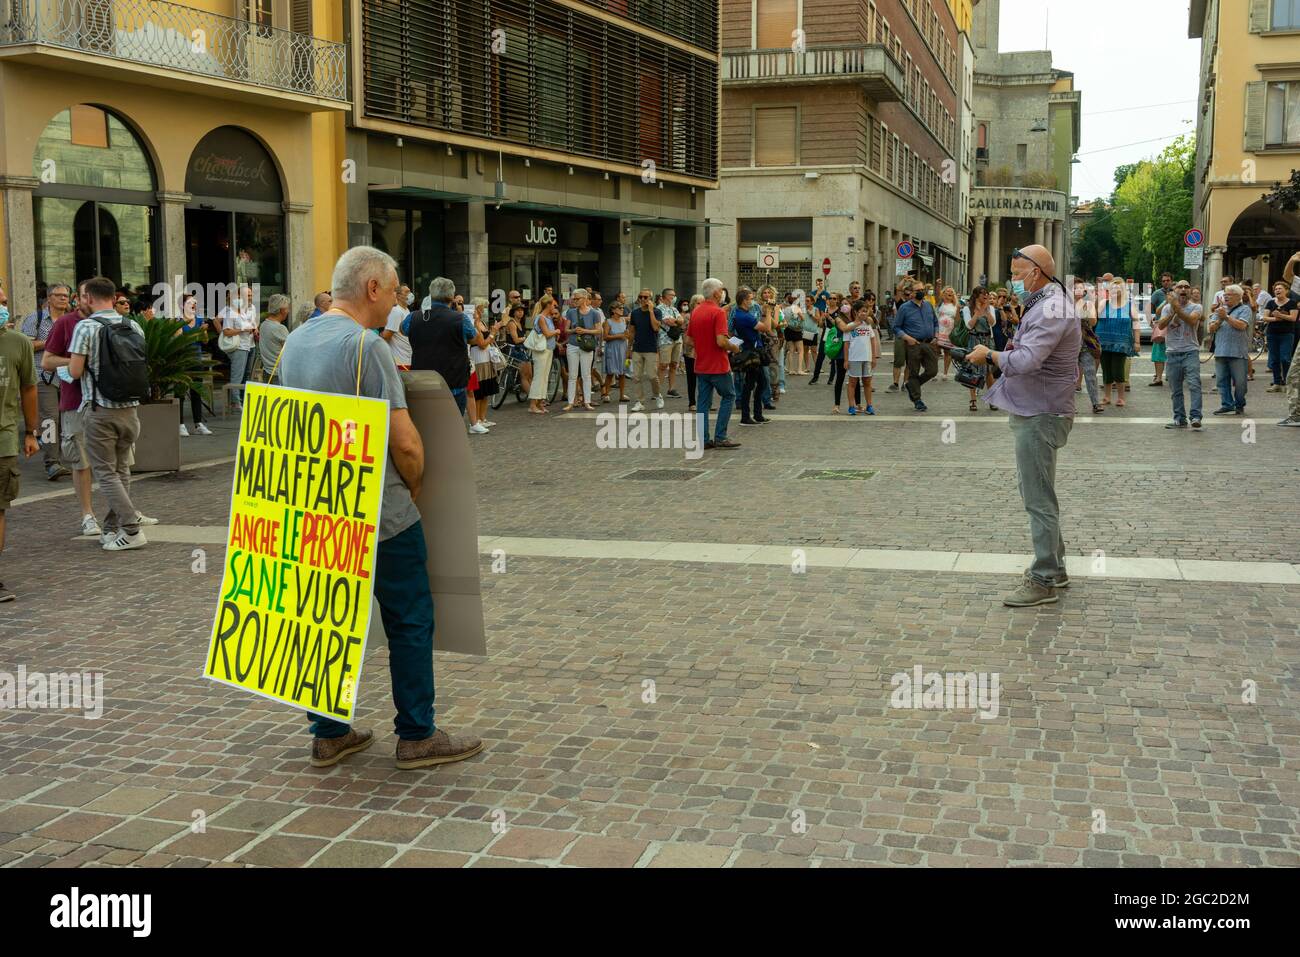 CREMONA, ITALIE - 24 juillet 2021 : une foule de personnes protestant contre la vaccination Covid-19 à Cremon, Italie Banque D'Images